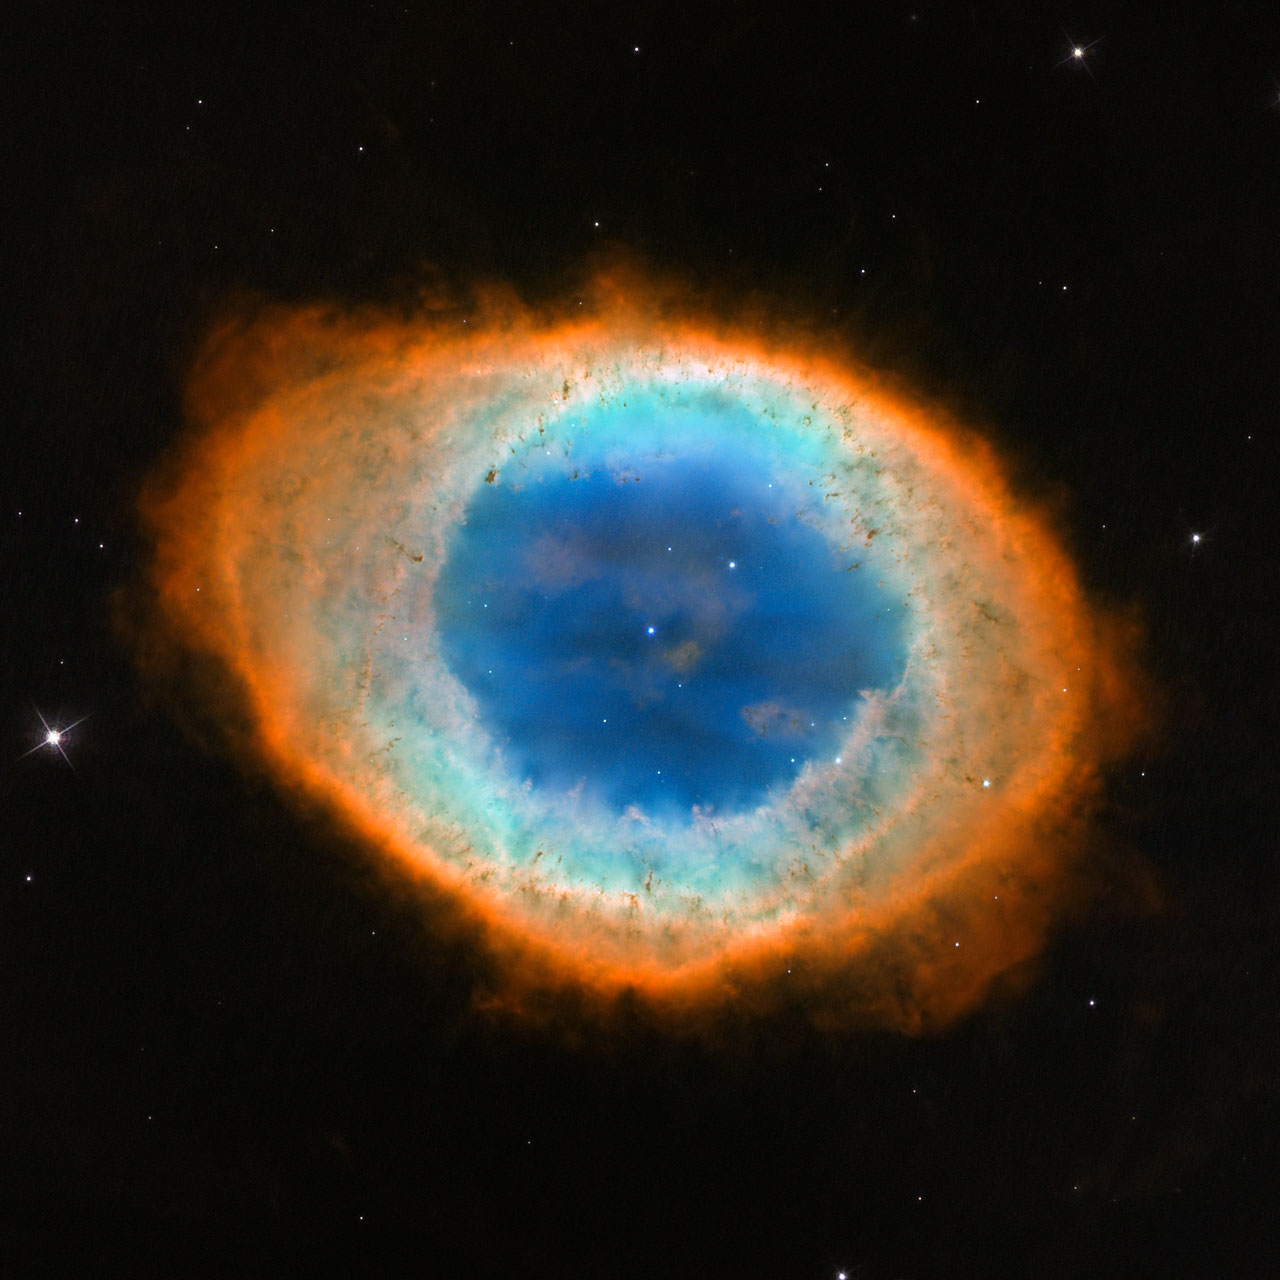 Imagen de la Nebulosa del ANillo tomada por el telescopio espacial Hubble en 2013